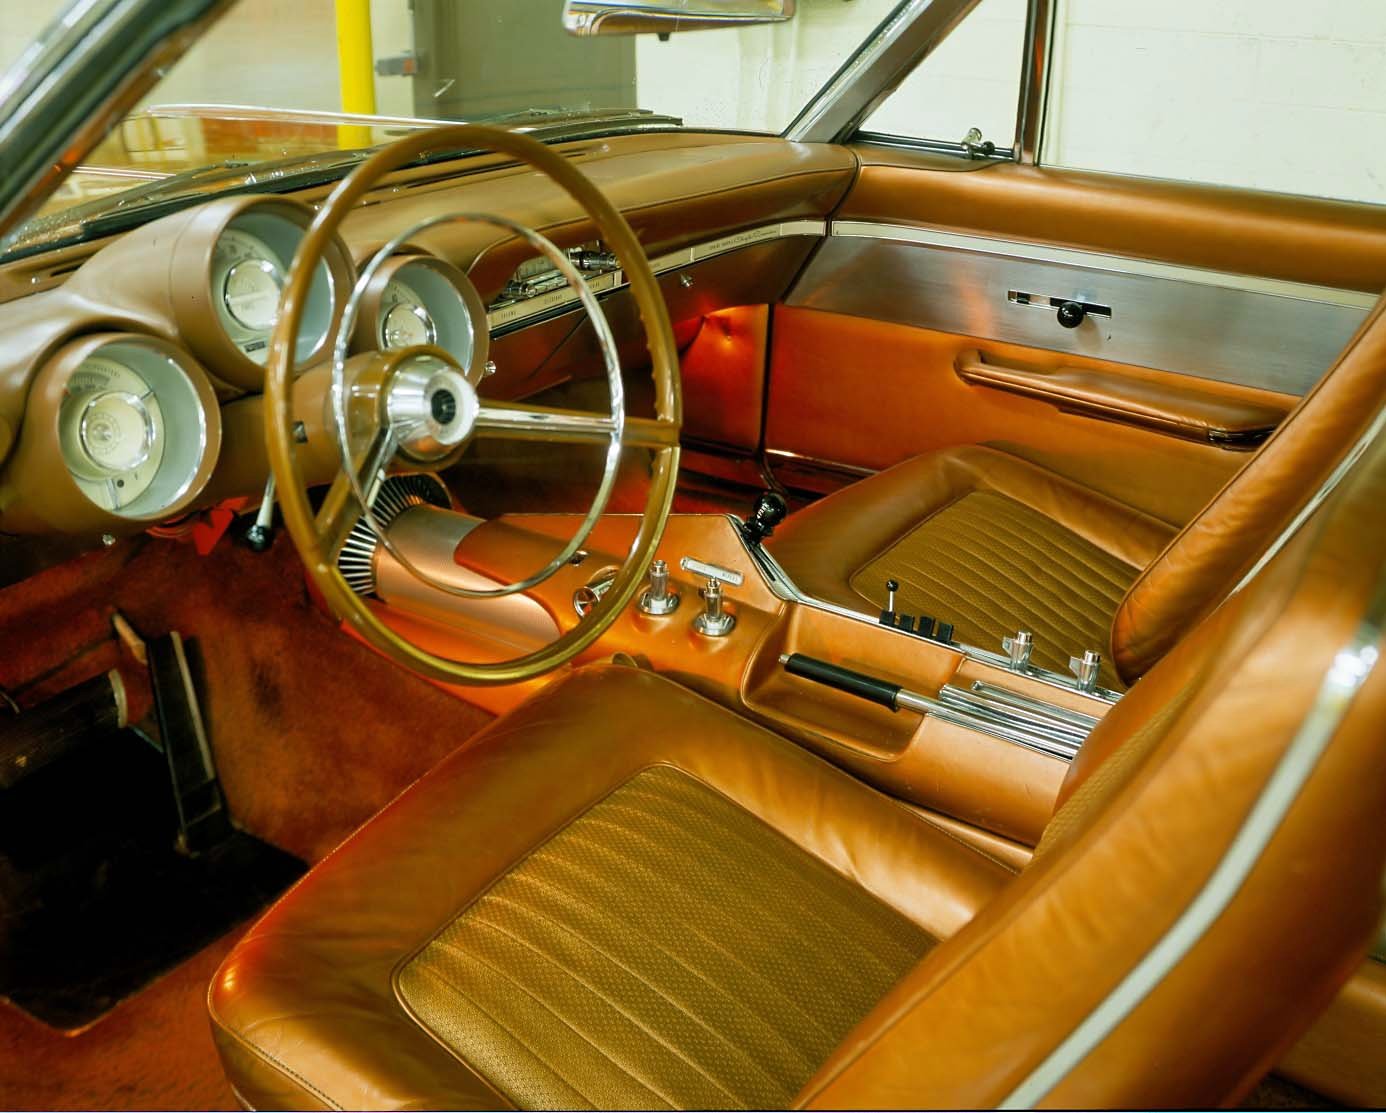 1964 Chrysler Turbine Car